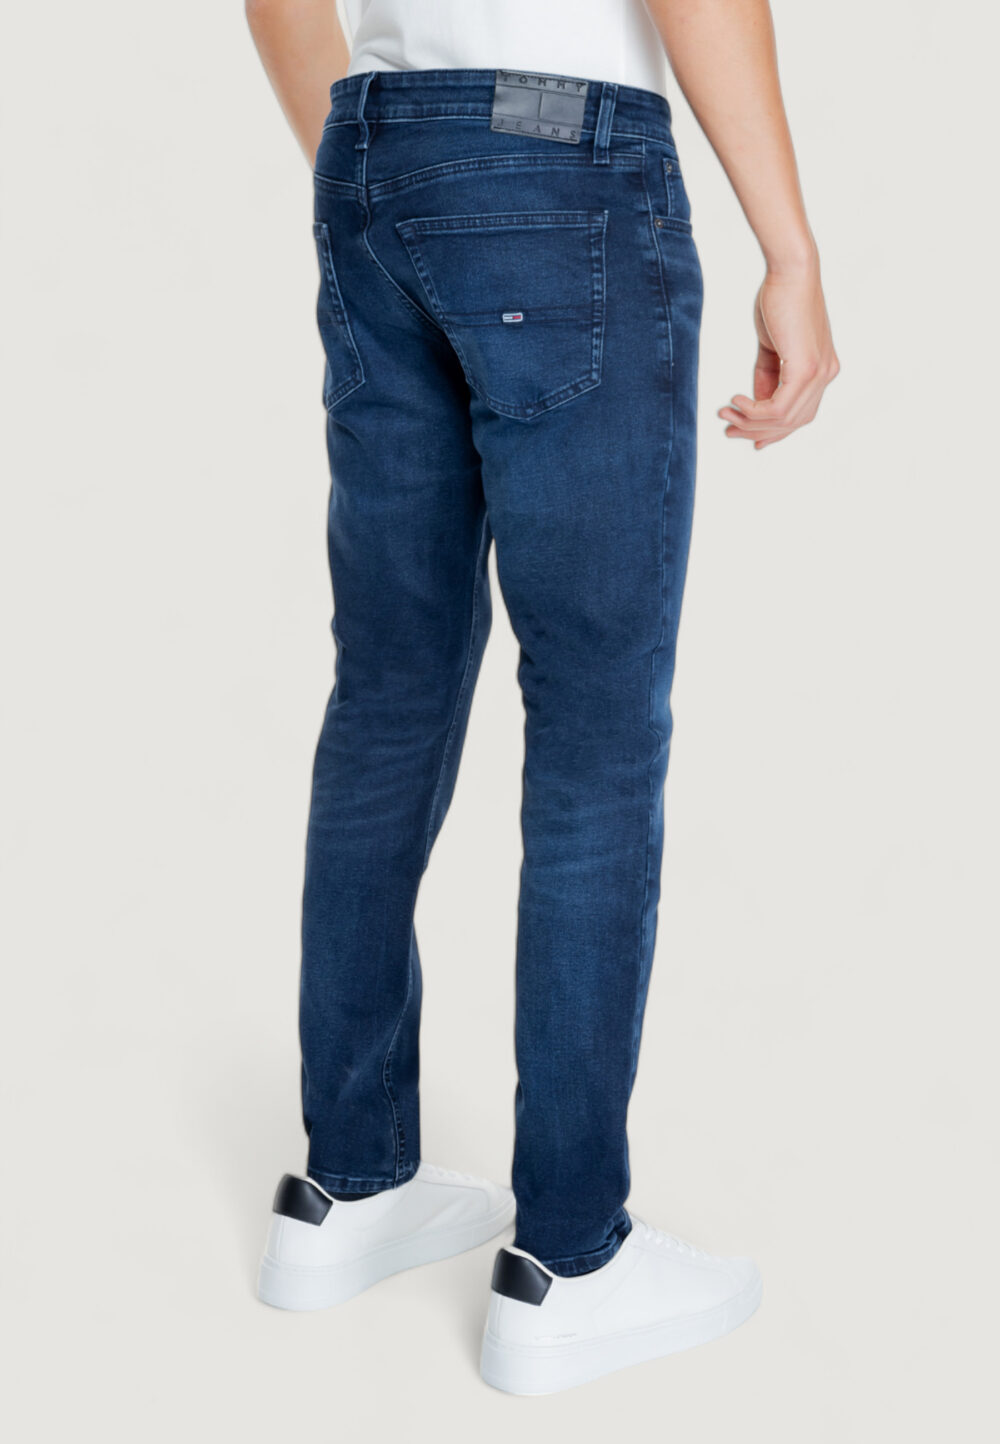 Jeans slim Tommy Hilfiger SCANTON CH1263 Denim scuro - Foto 3